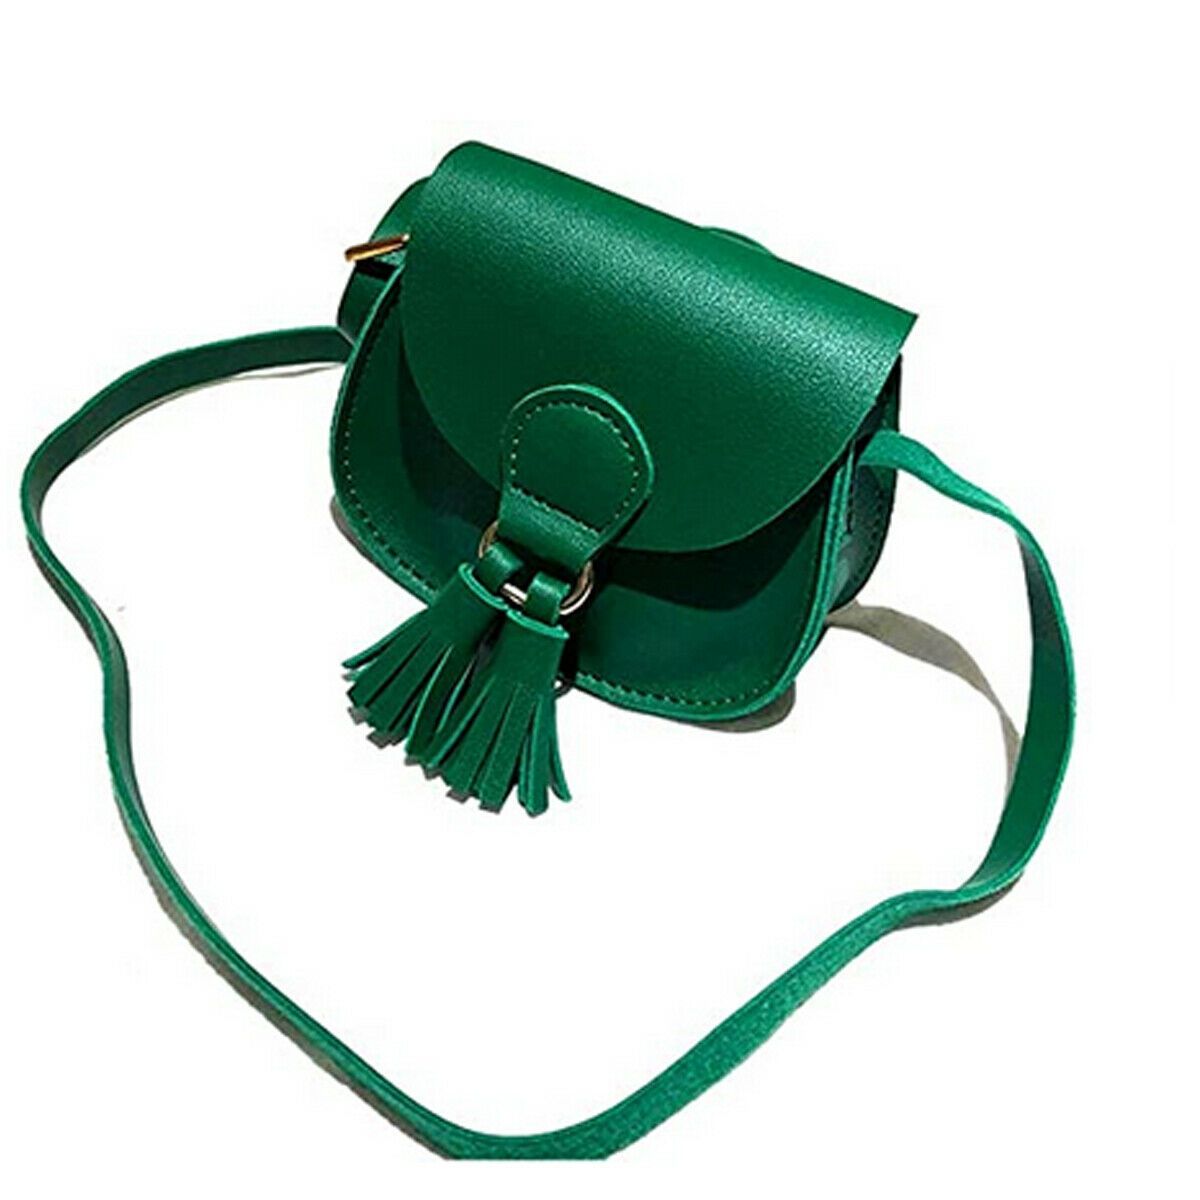 Details about  / Women Leather Tote Purse Satchel Hobo Crossbody Messenger Shoulder Handbag Bag